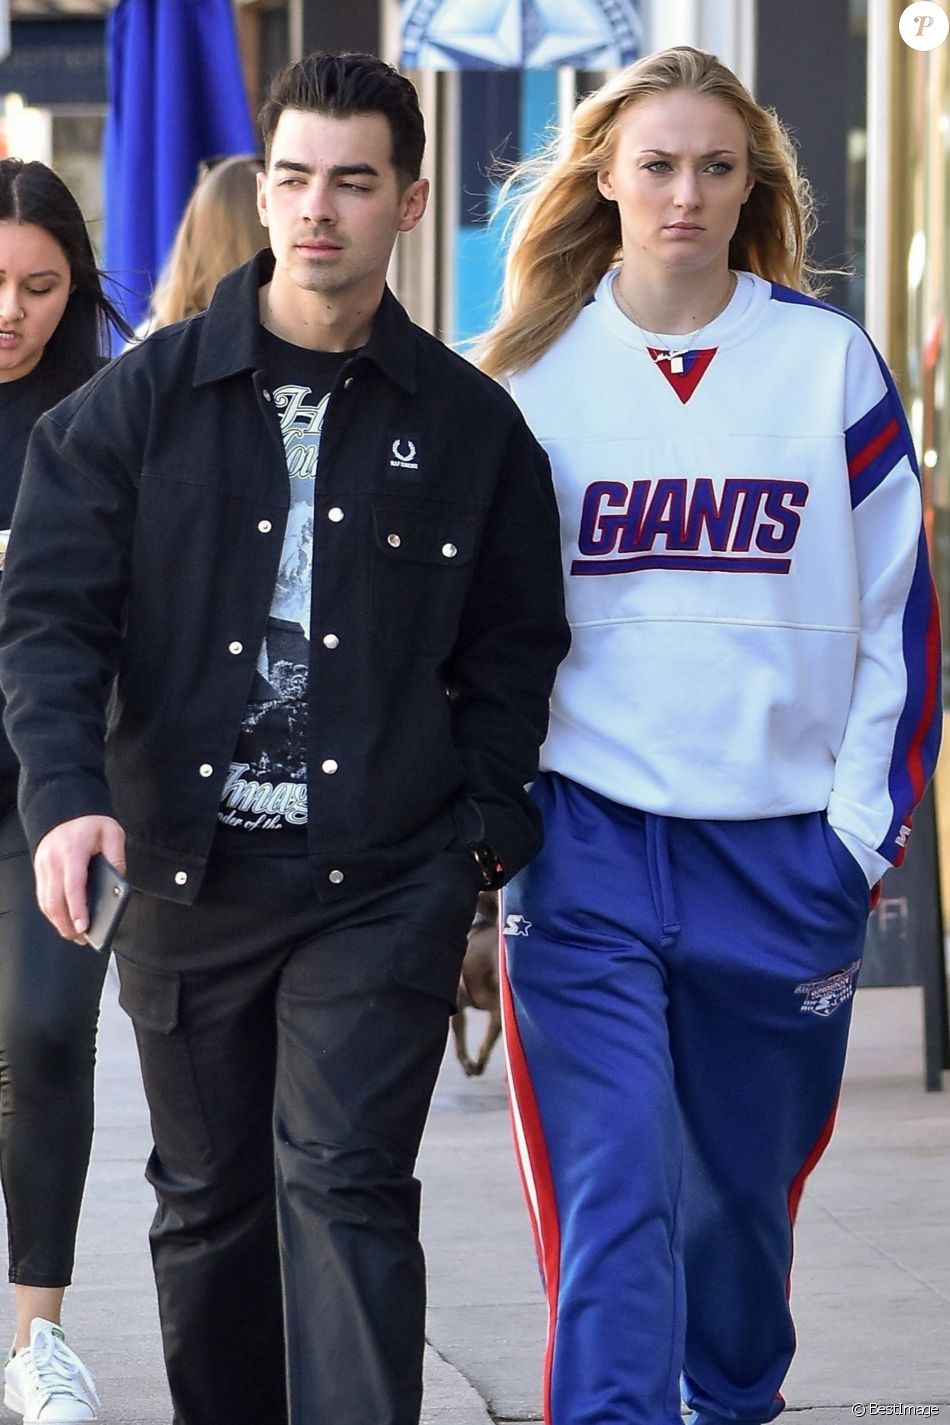 Joe Jonas et sa femme Sophie Turner font du shopping dans le quartier de Studio City à Los Angeles, le 2 mars 2020.